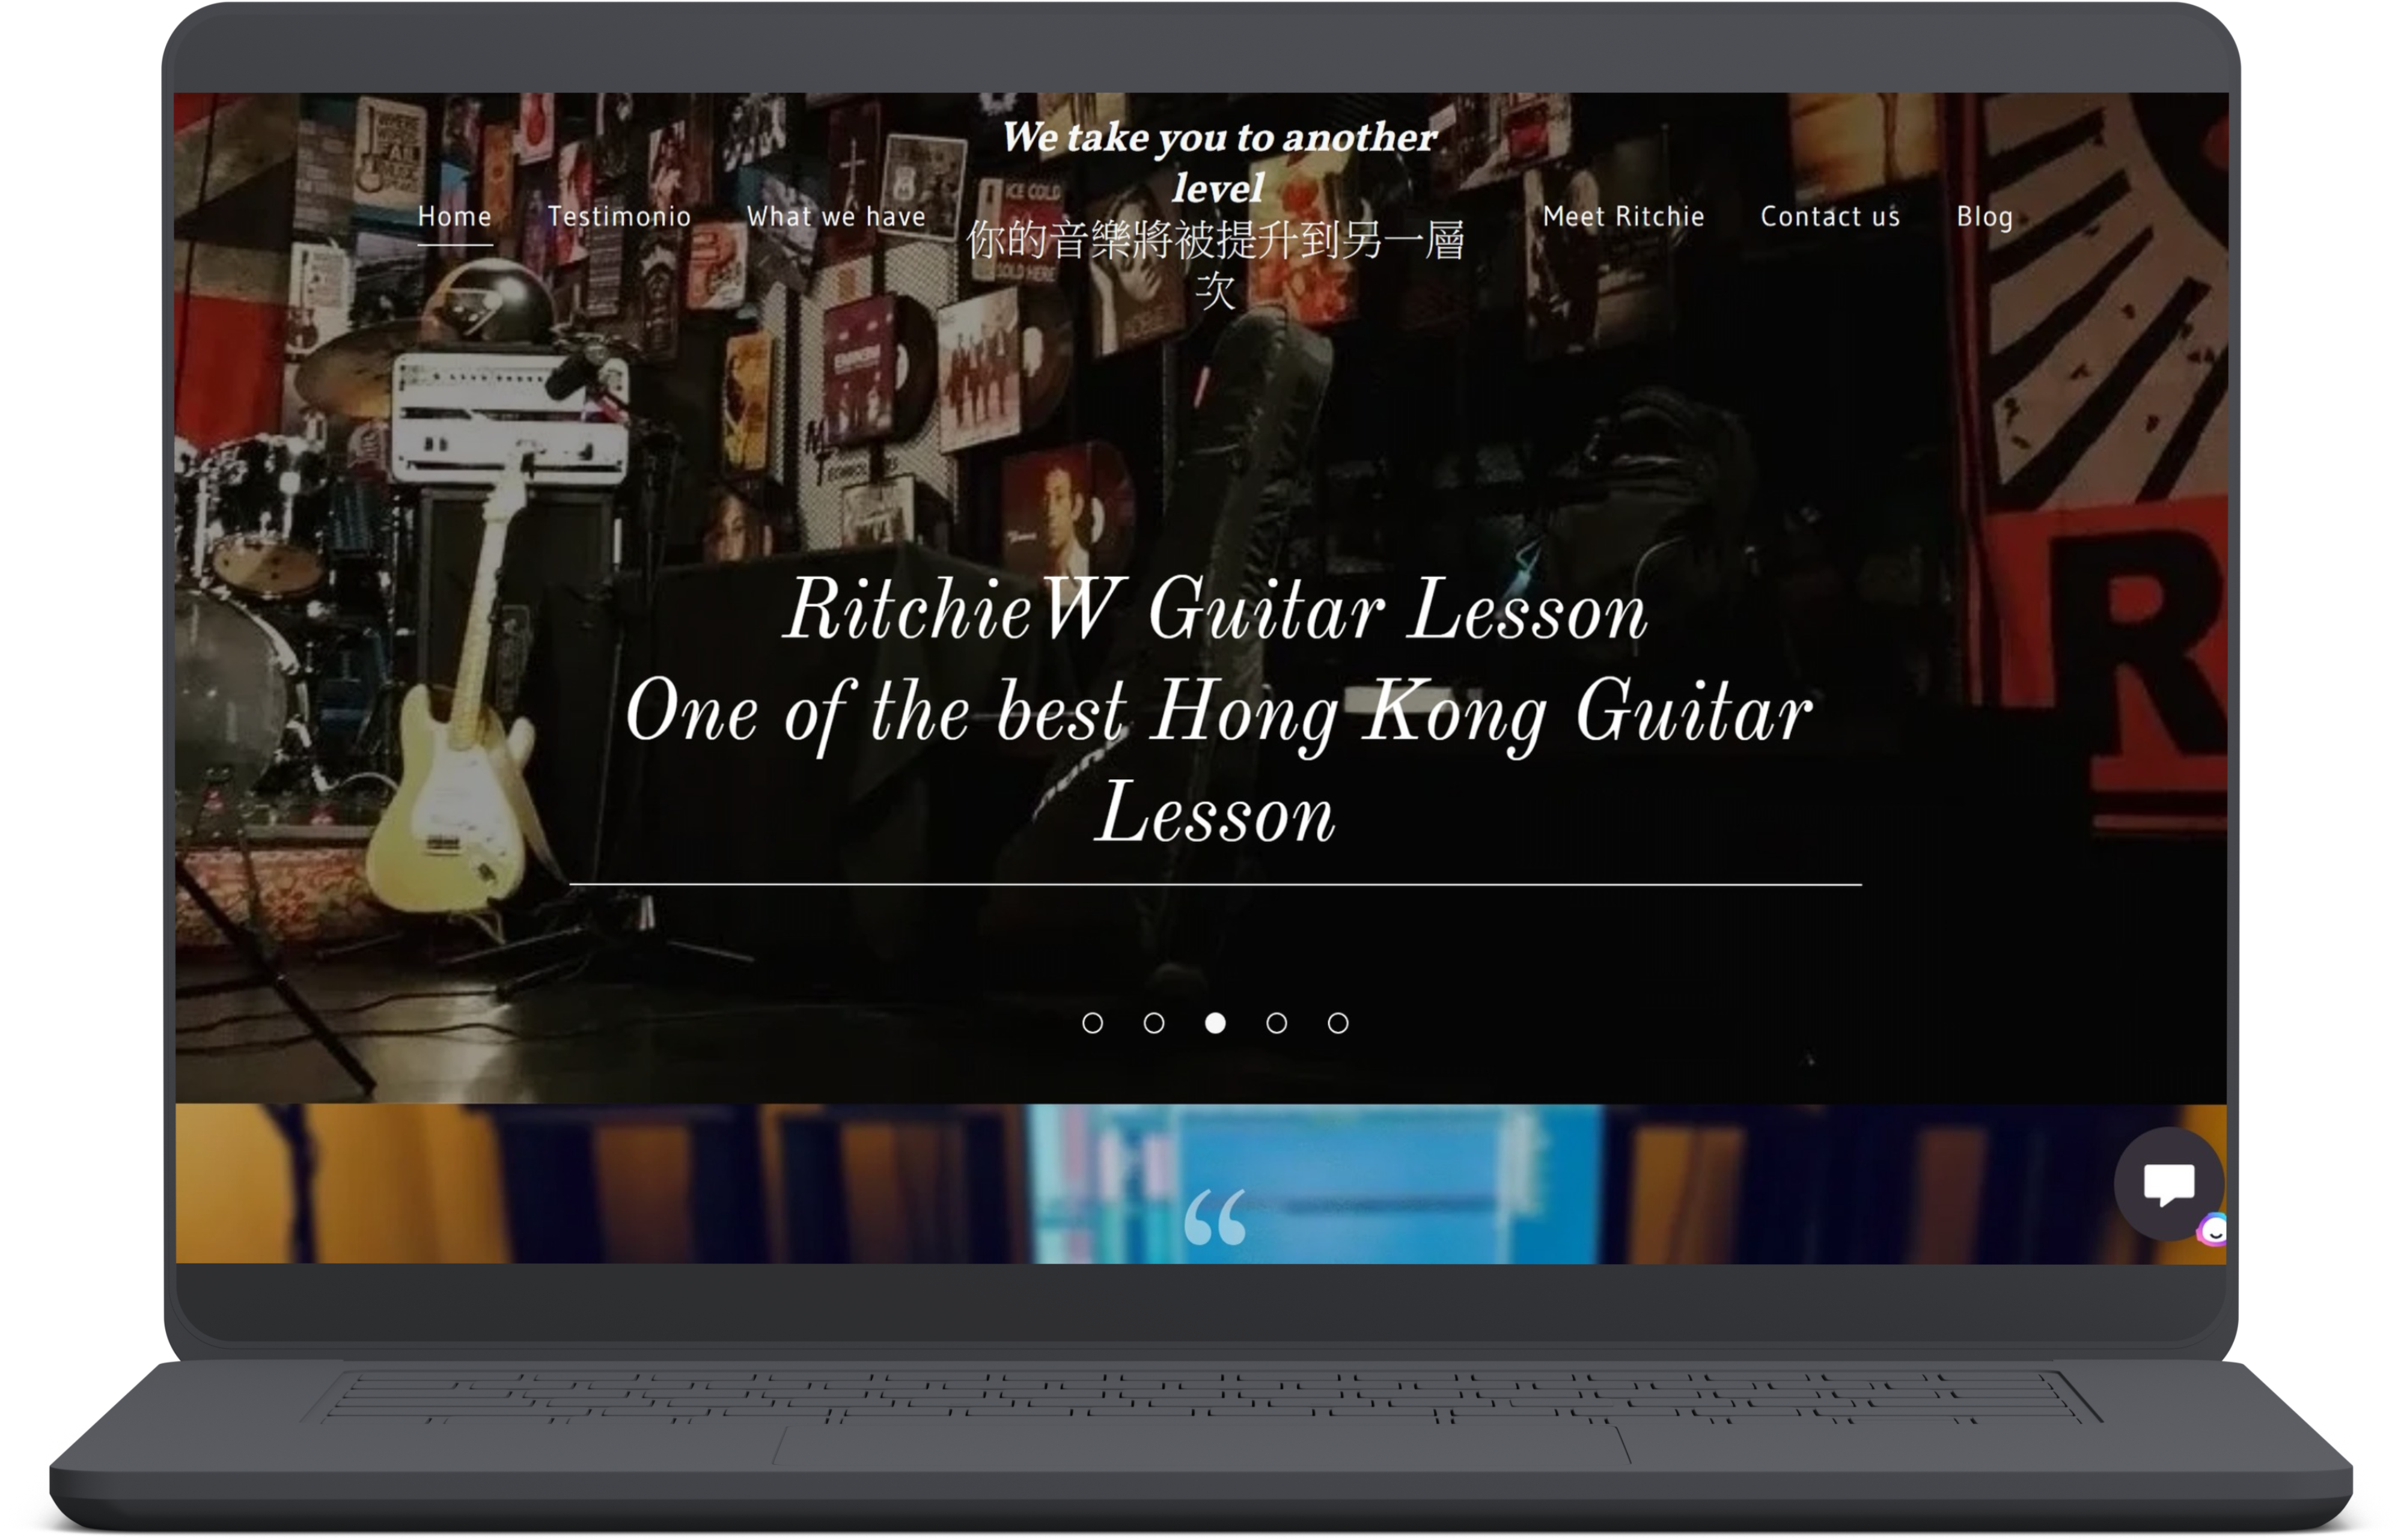 網站主頁顯示「RitchieW 吉他課程：香港最好的吉他課程之一」的文字。背景圖像展示了舞台上的樂器和設備。顯示筆記型電腦螢幕。